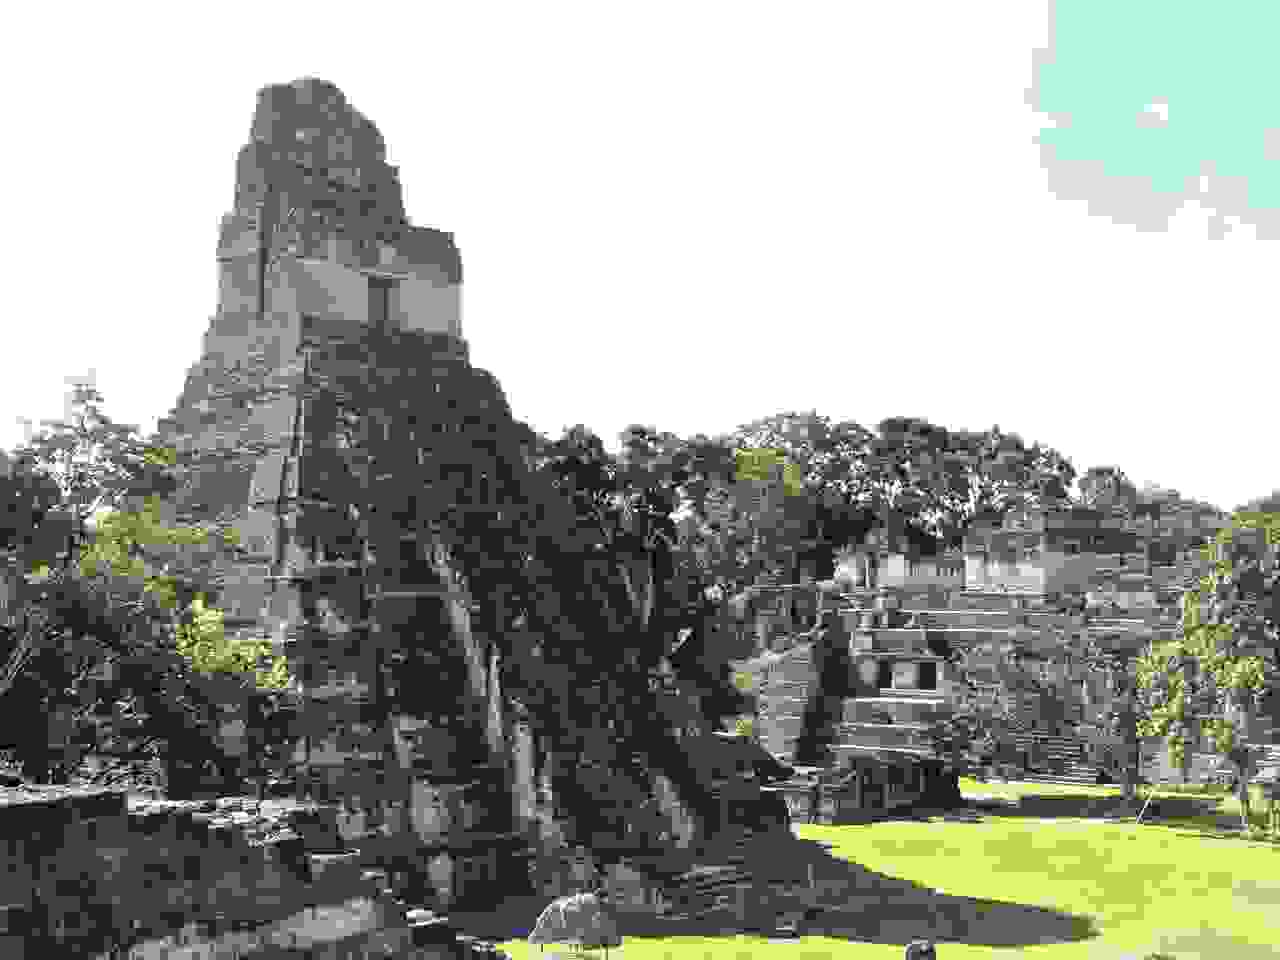 Tikal's main plaza